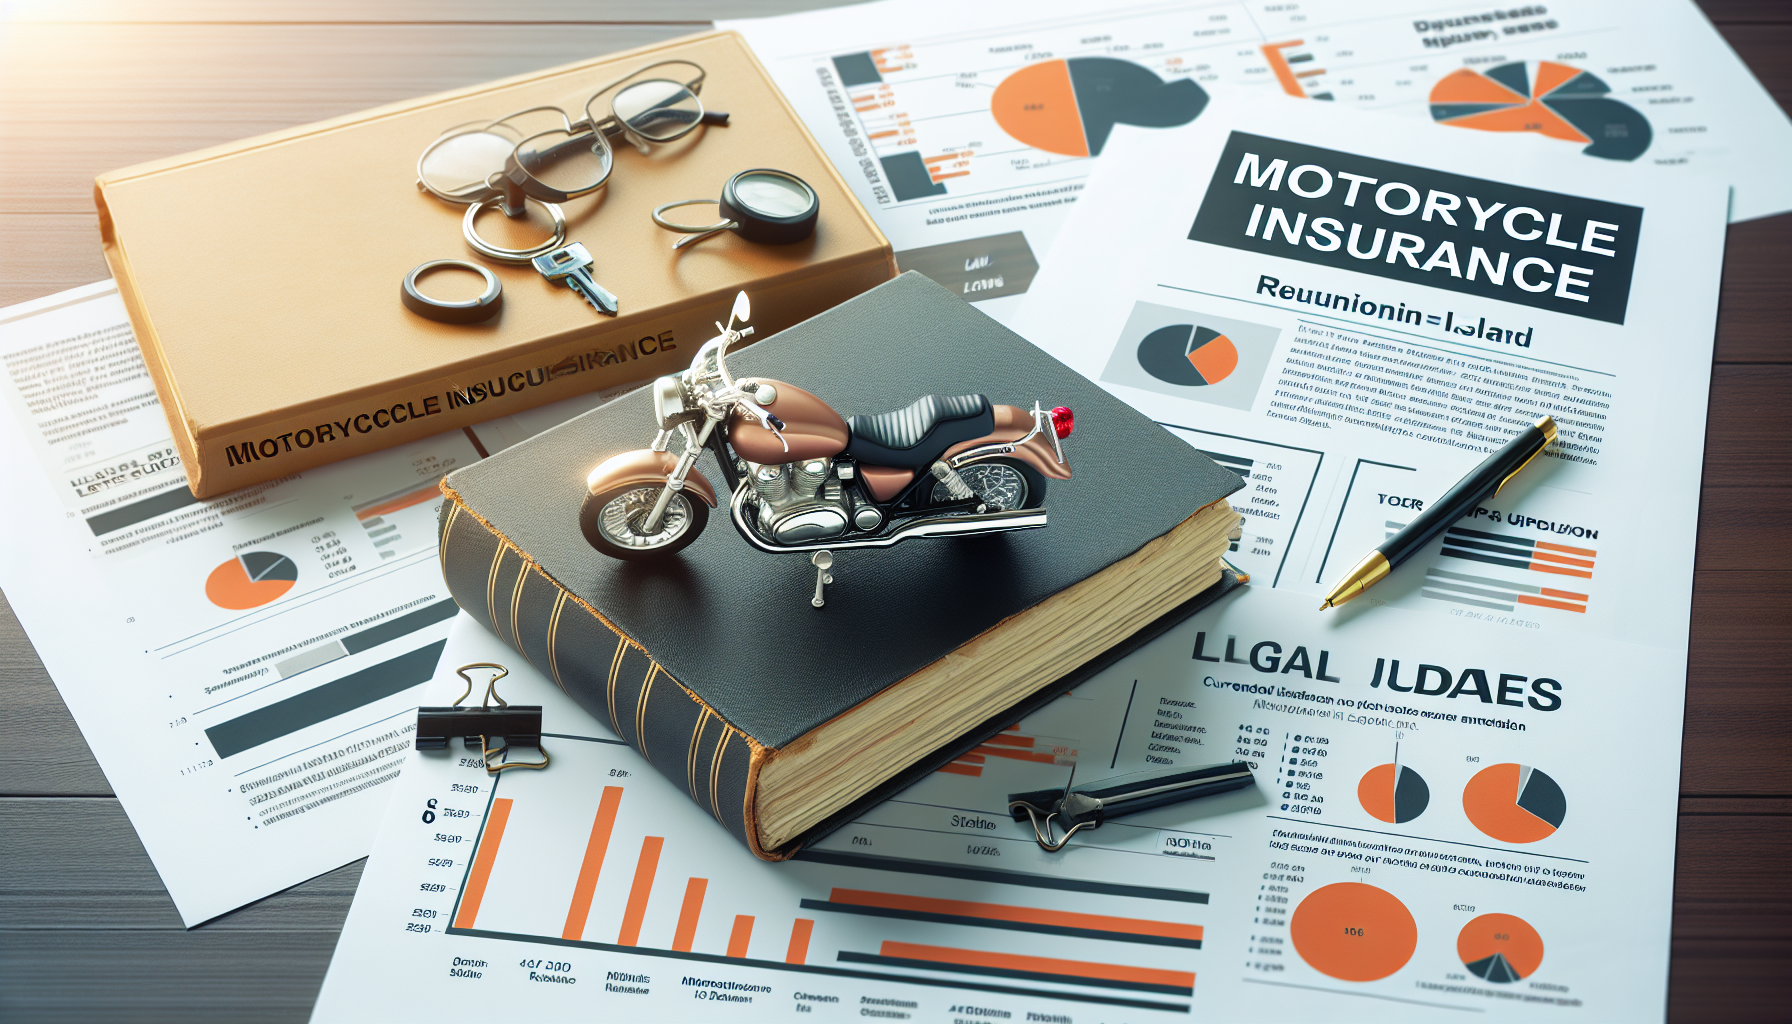 découvrez les évolutions légales concernant l'assurance moto à la réunion et trouvez les meilleures solutions d'assurance moto adaptées à votre situation.